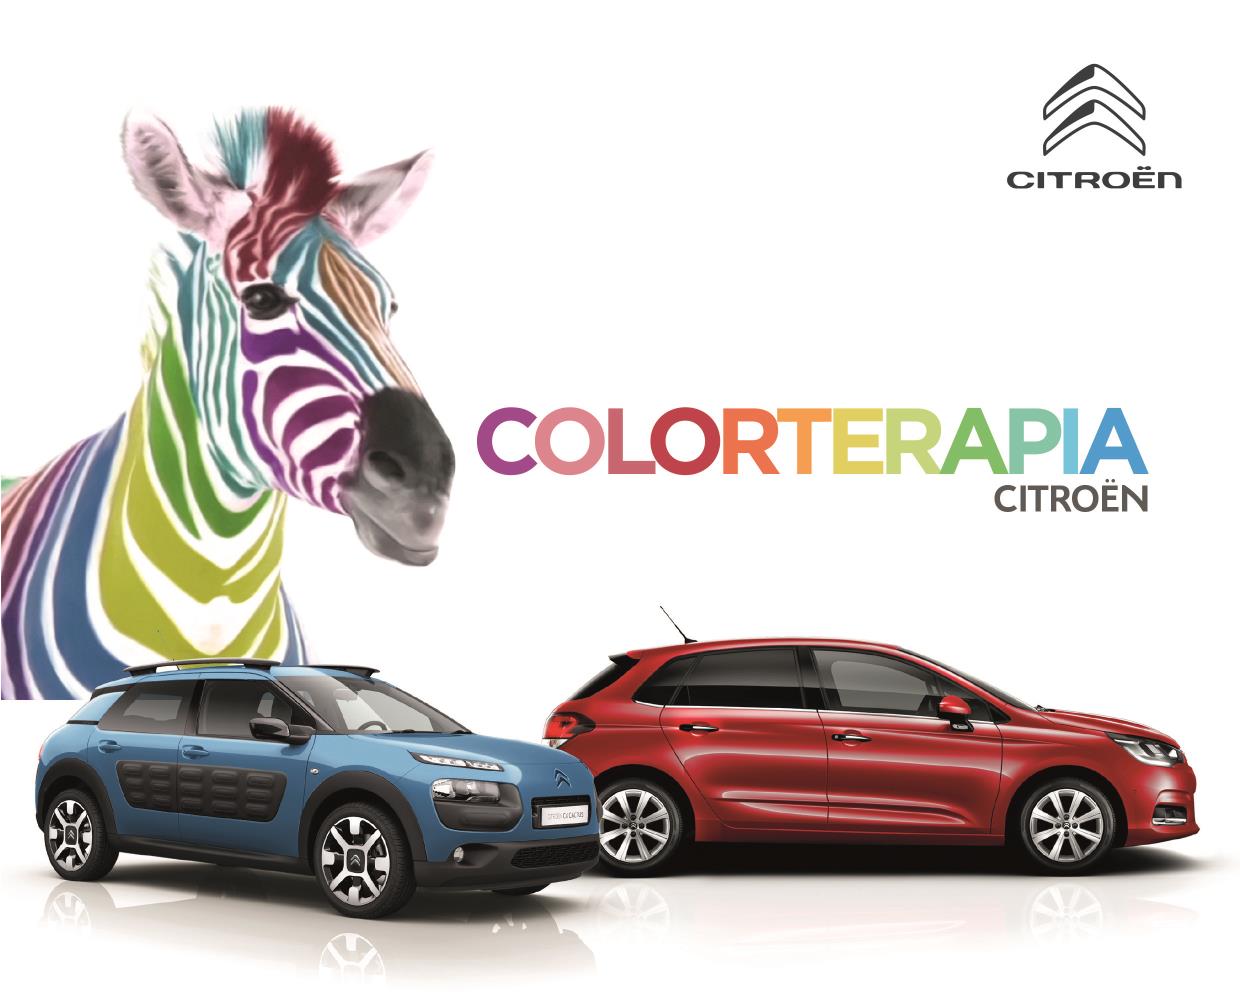 Citroën apuesto por el poder de la Colorterapia